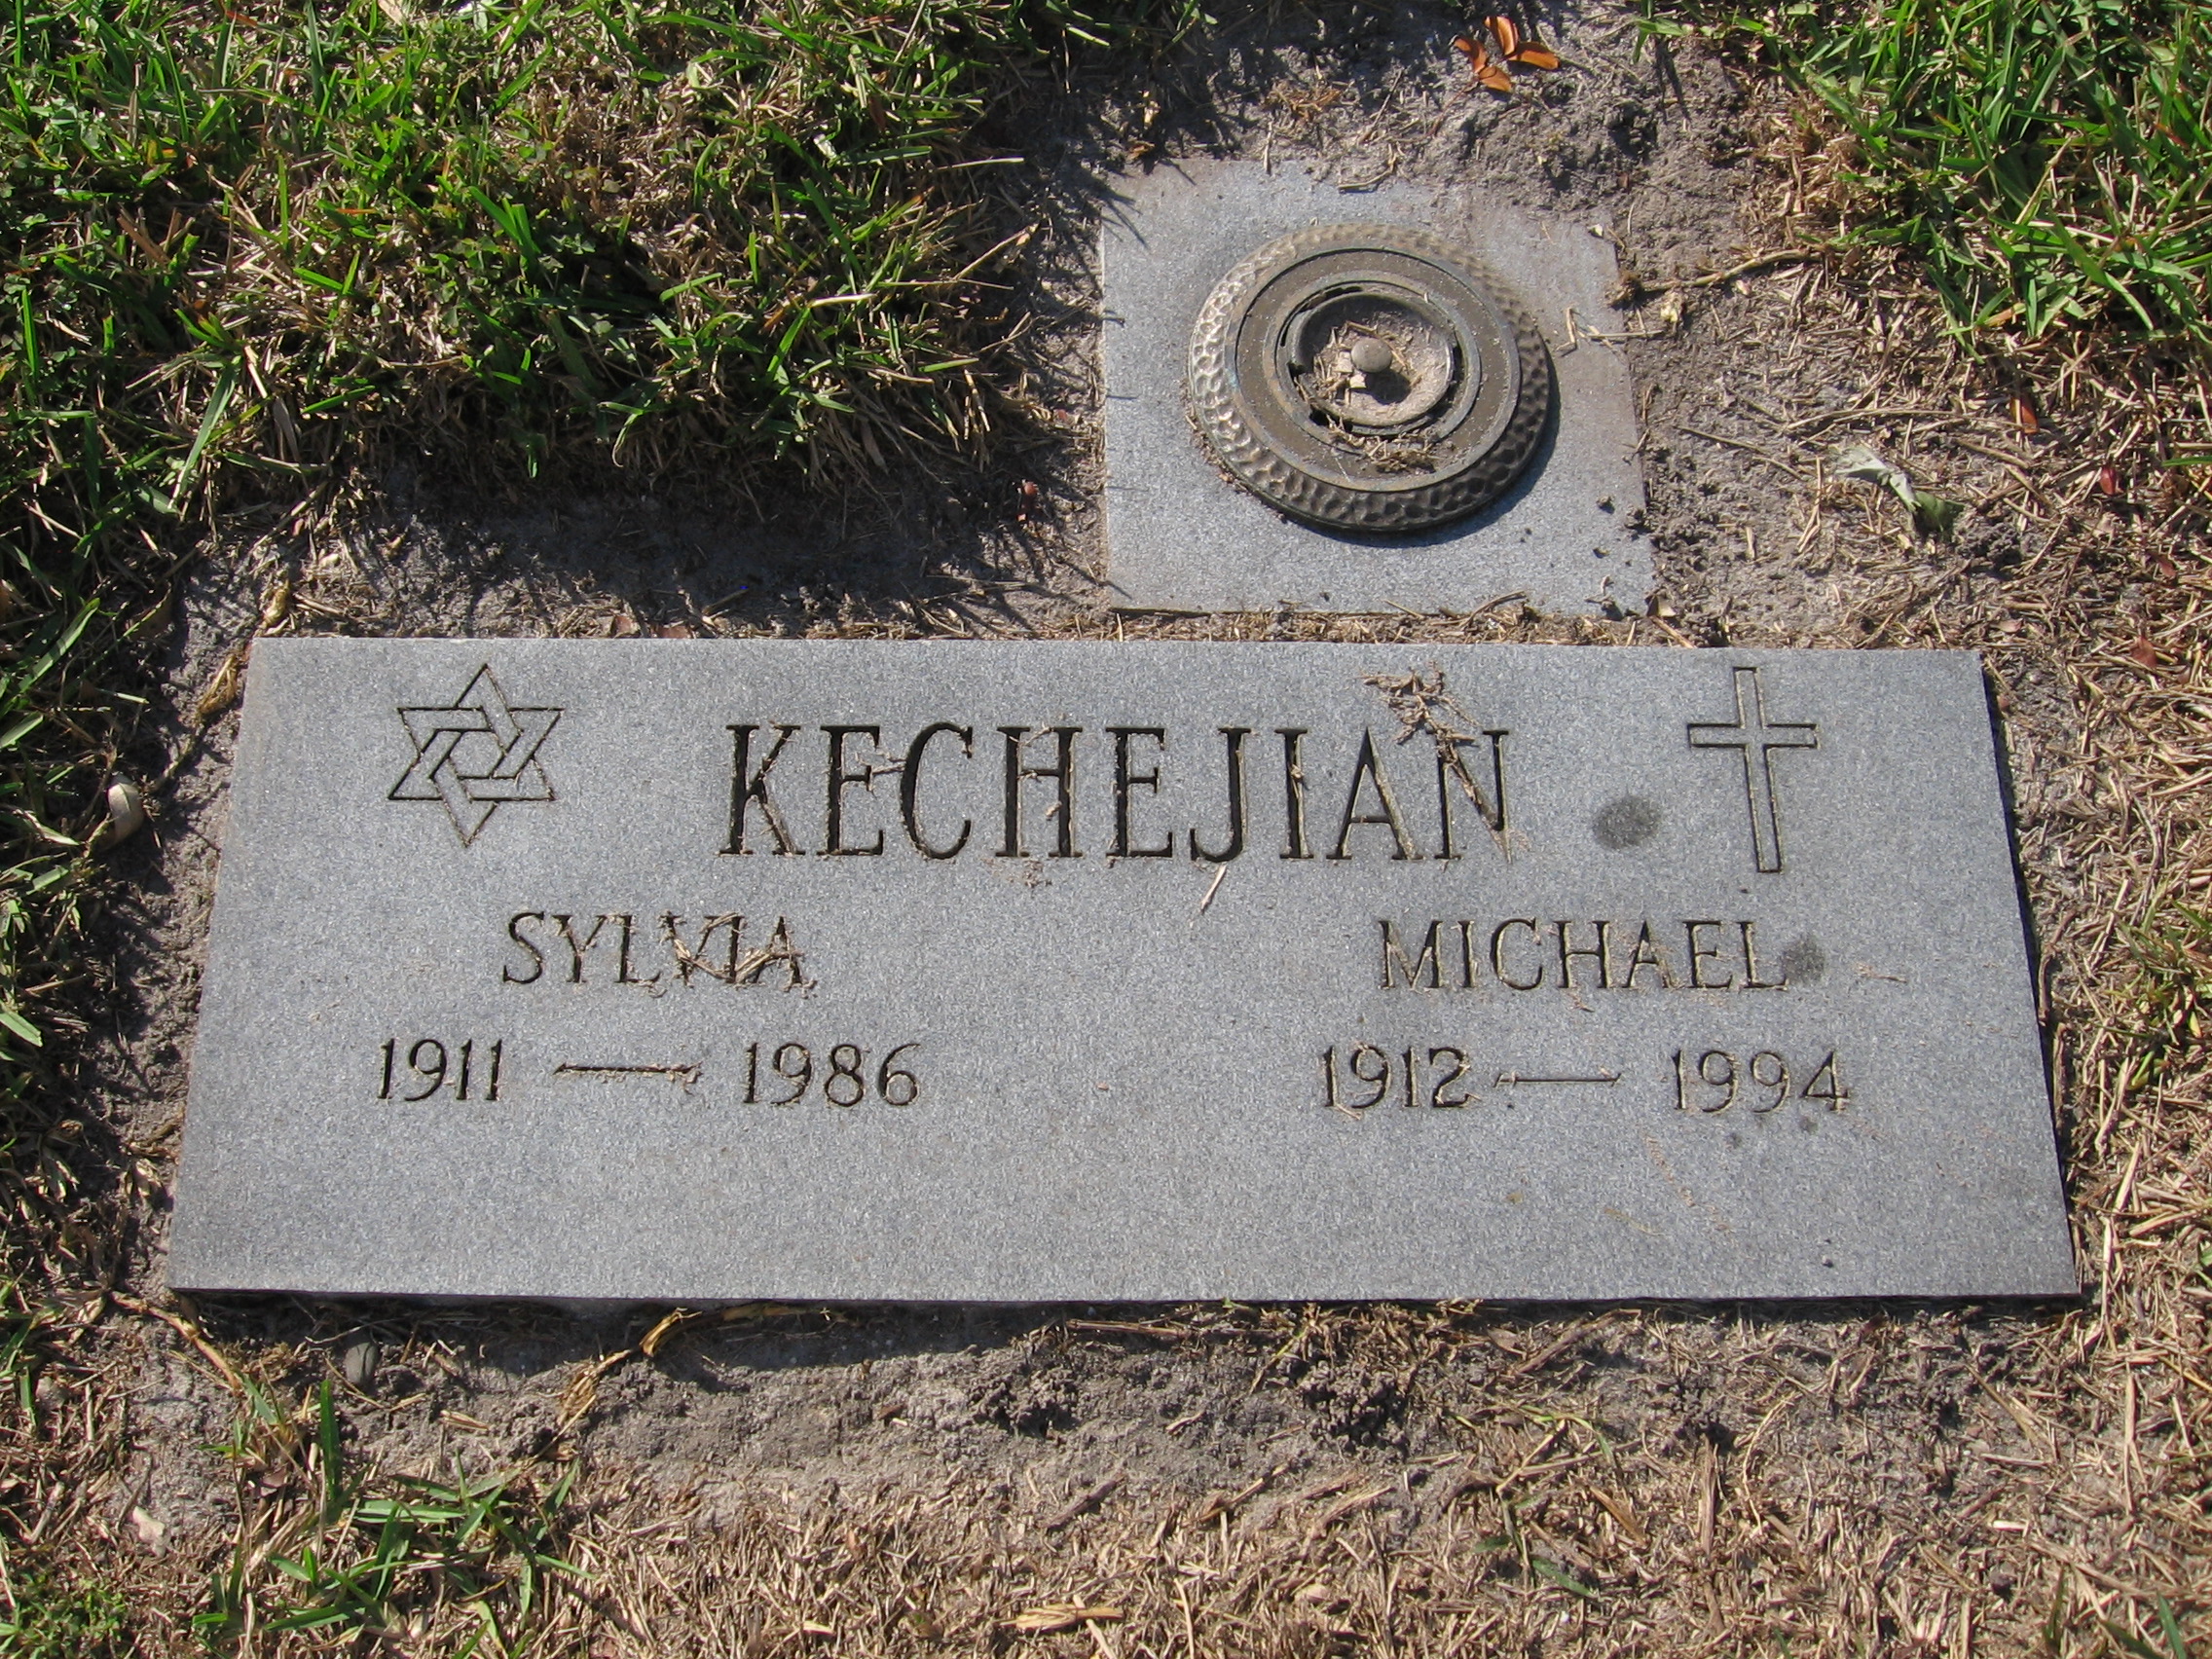 Michael Kechejian